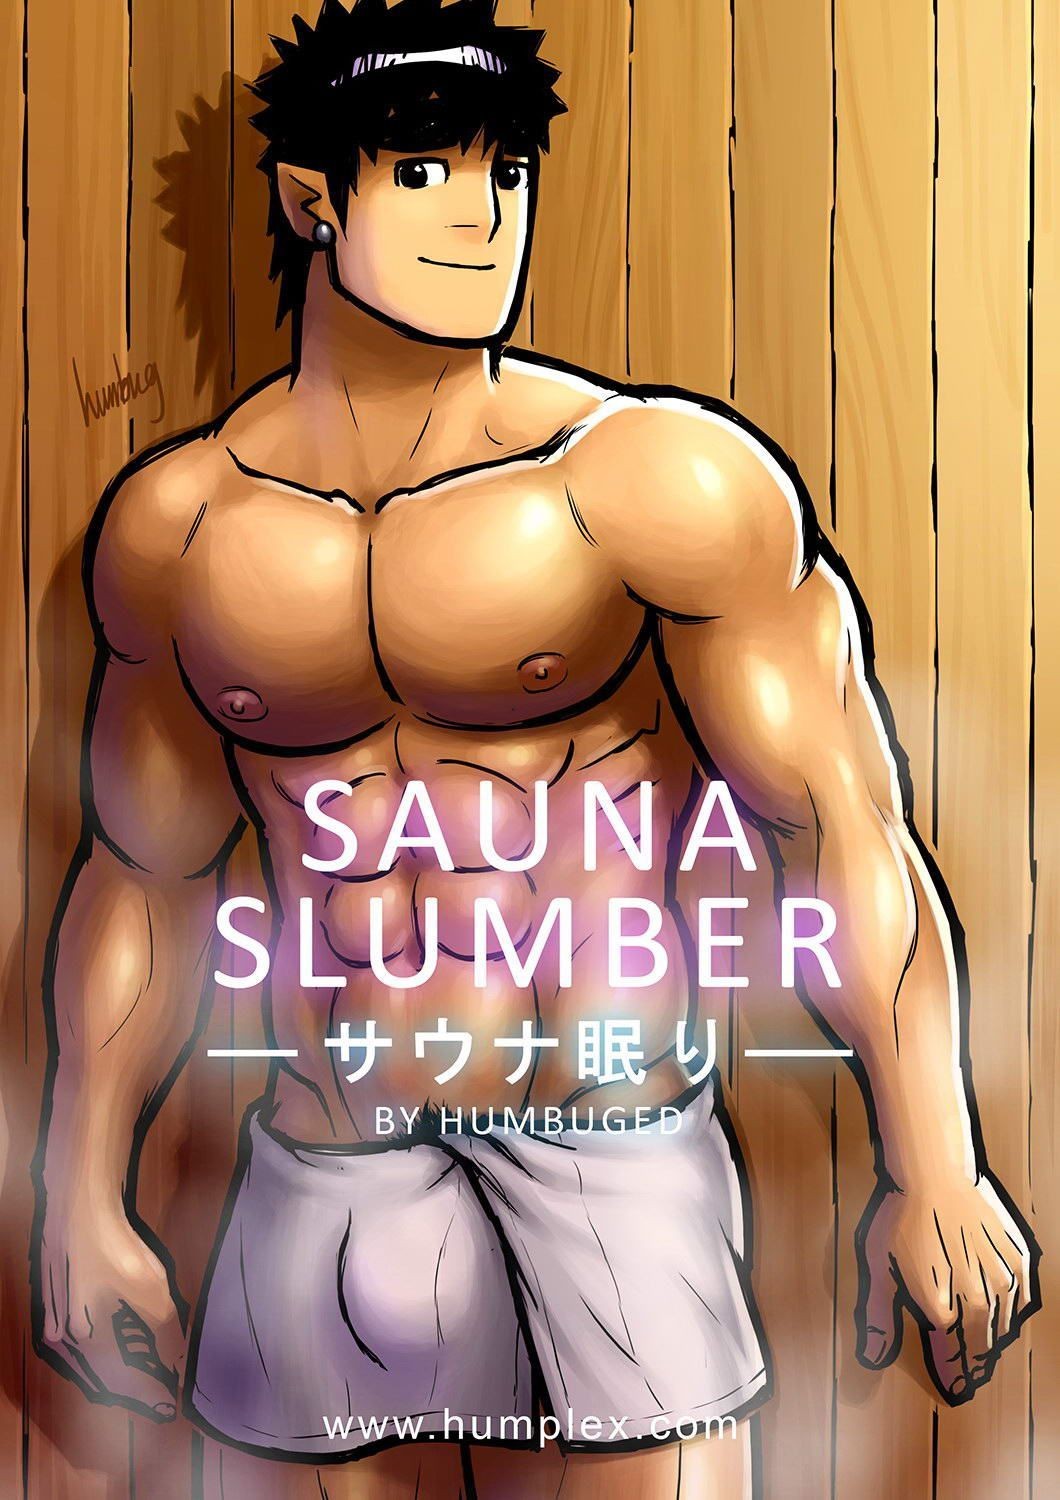 Pawg [Humbuged] Sauna Slumber [ENG] Hiddencam